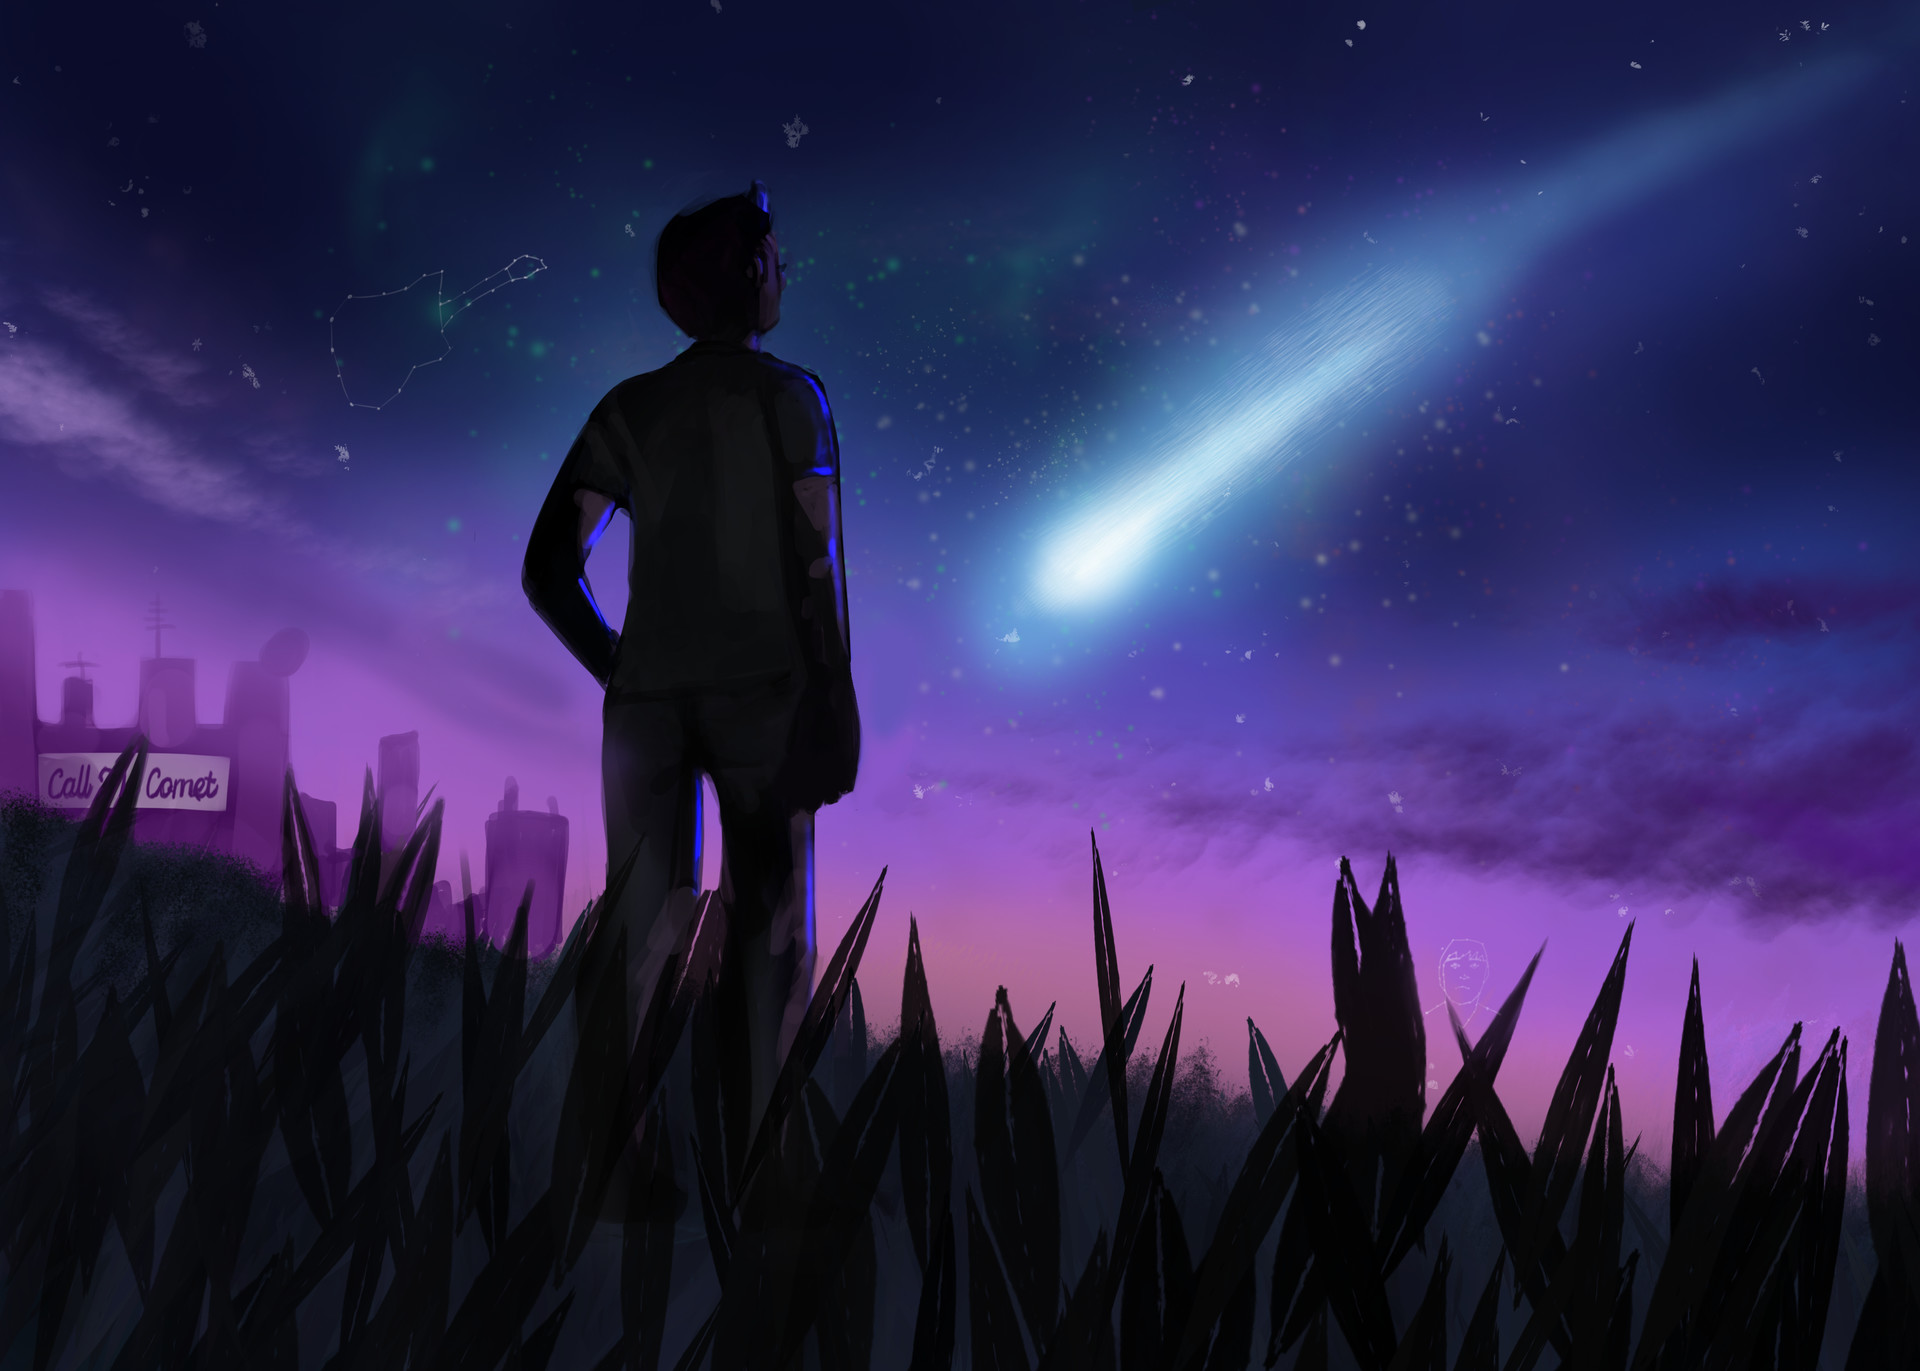 ArtStation - Call the Comet